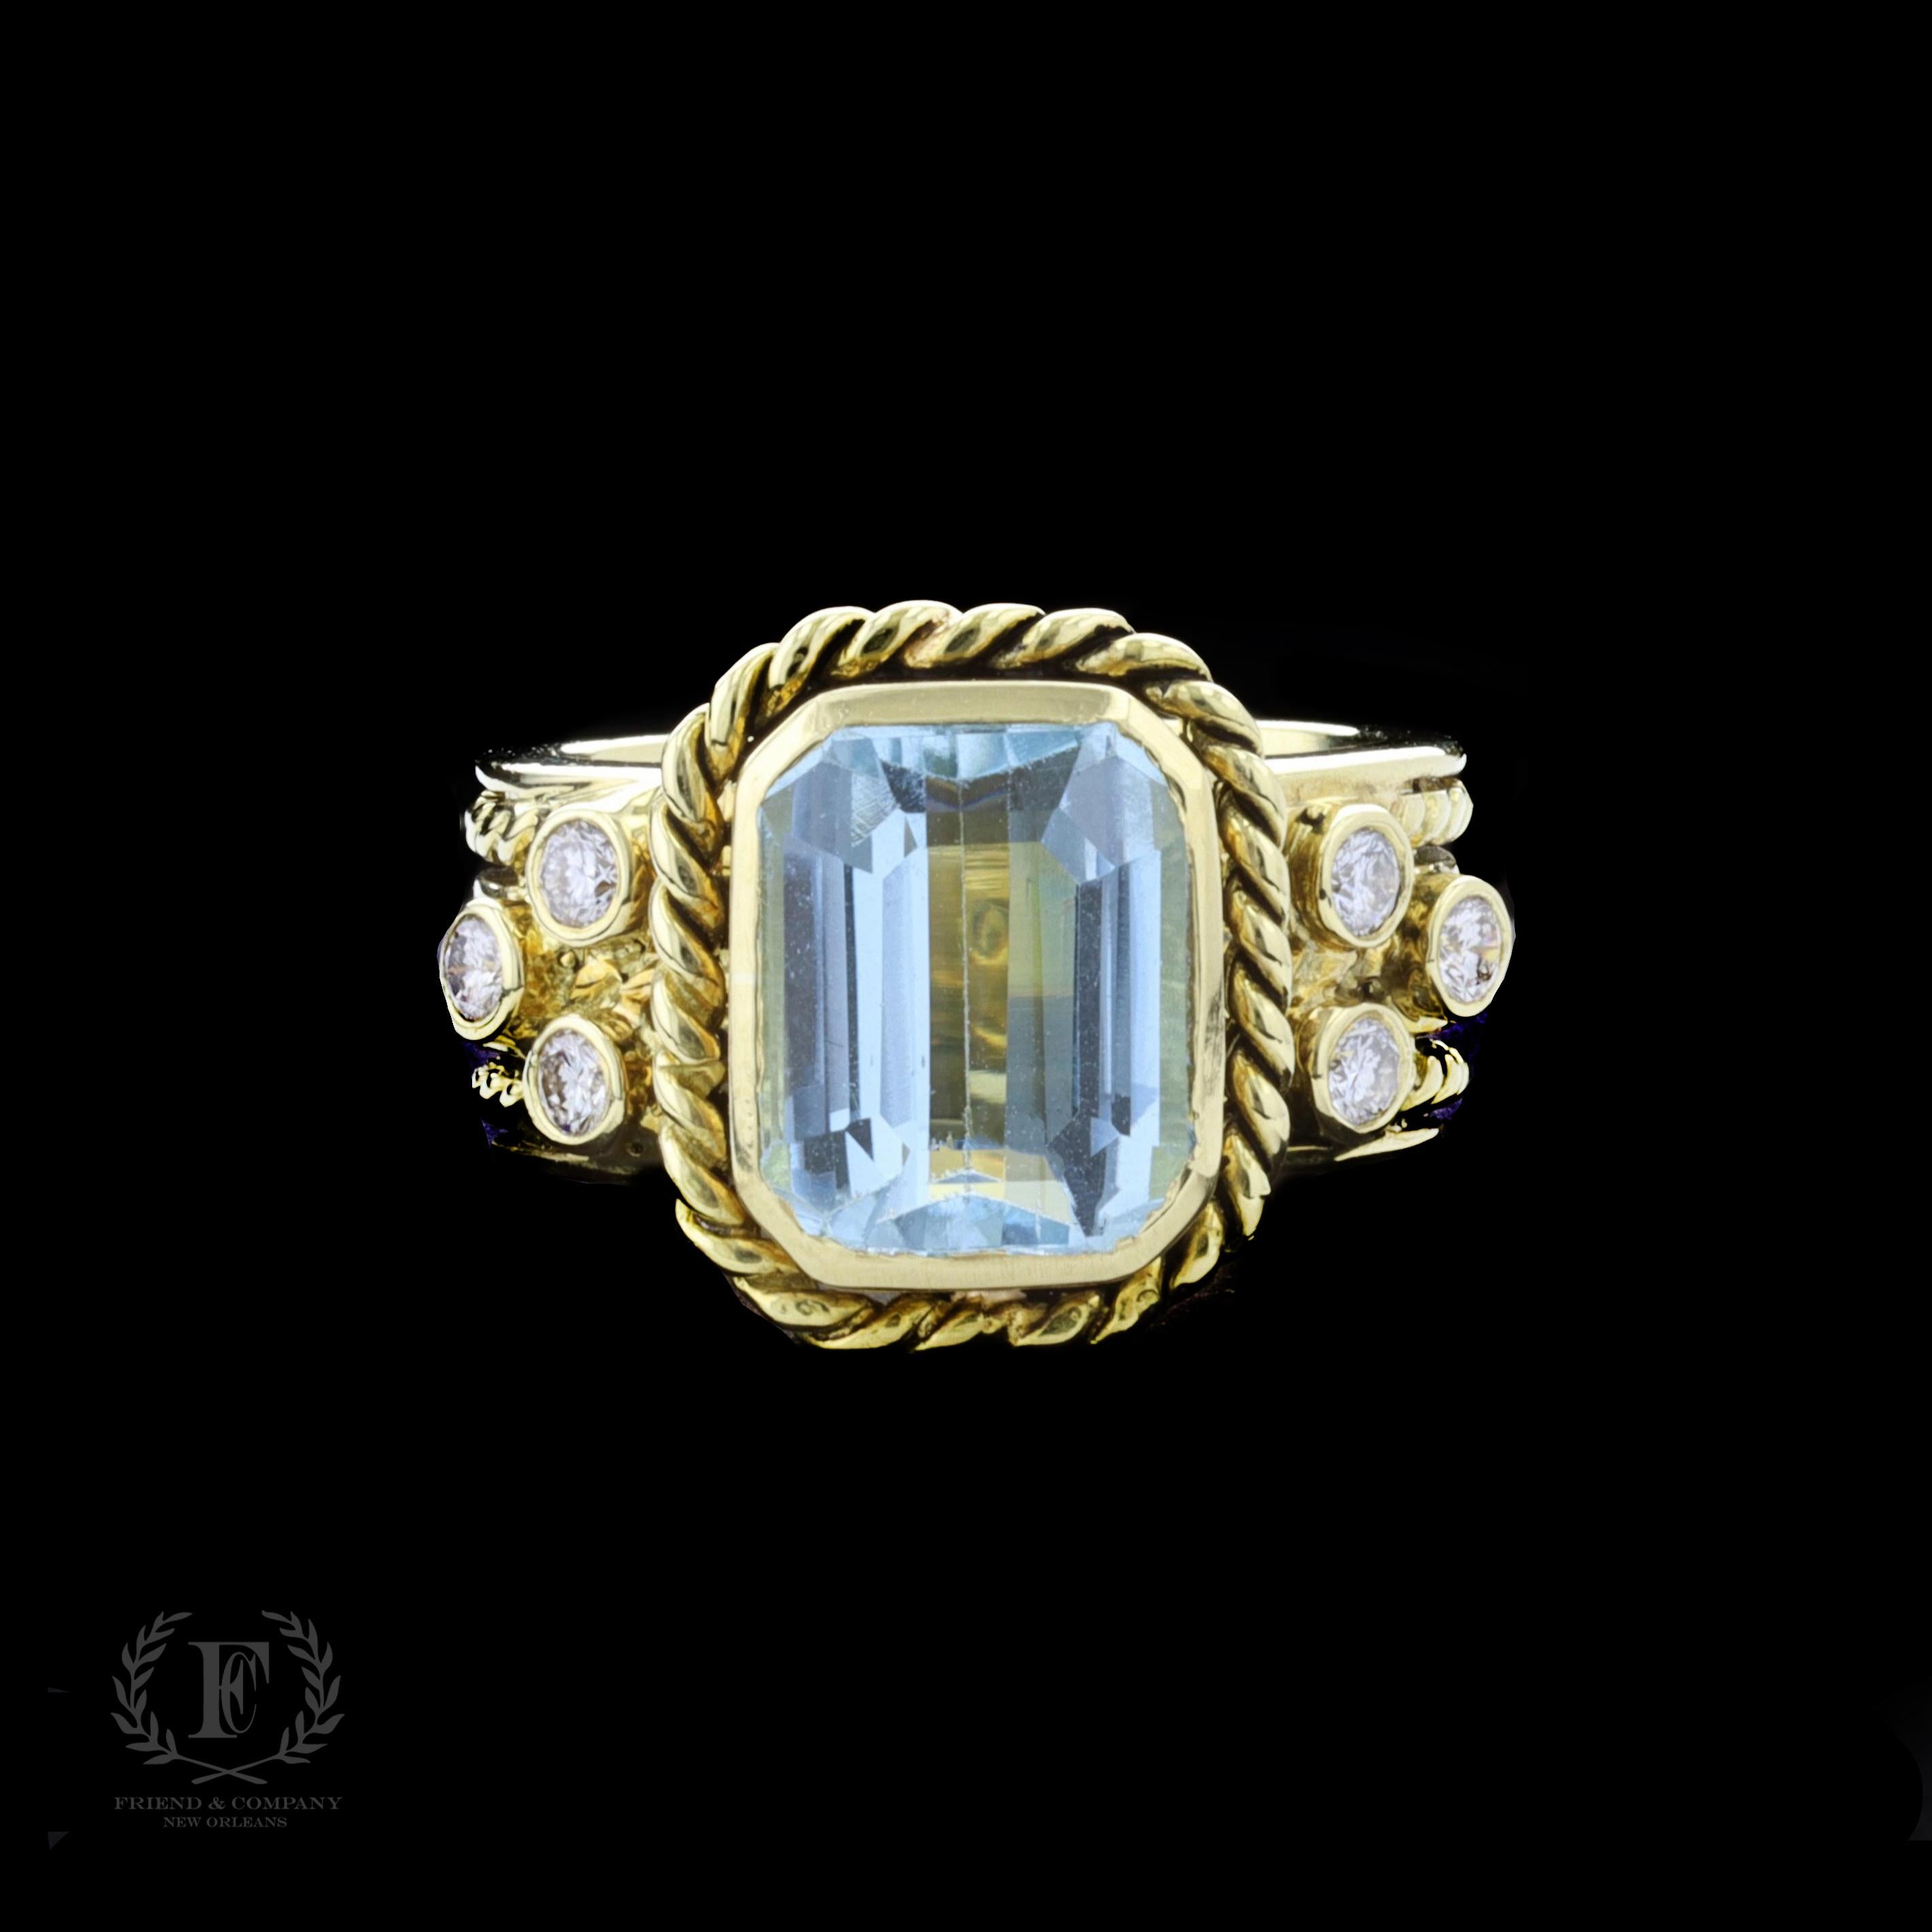 Ajoutez un trésor à votre collection de bijoux avec cette bague incroyablement unique en or jaune 18 carats en topaze bleue et diamants. Au centre de la bague se trouve une topaze bleue de taille émeraude et six diamants ronds de 0,25 carats au